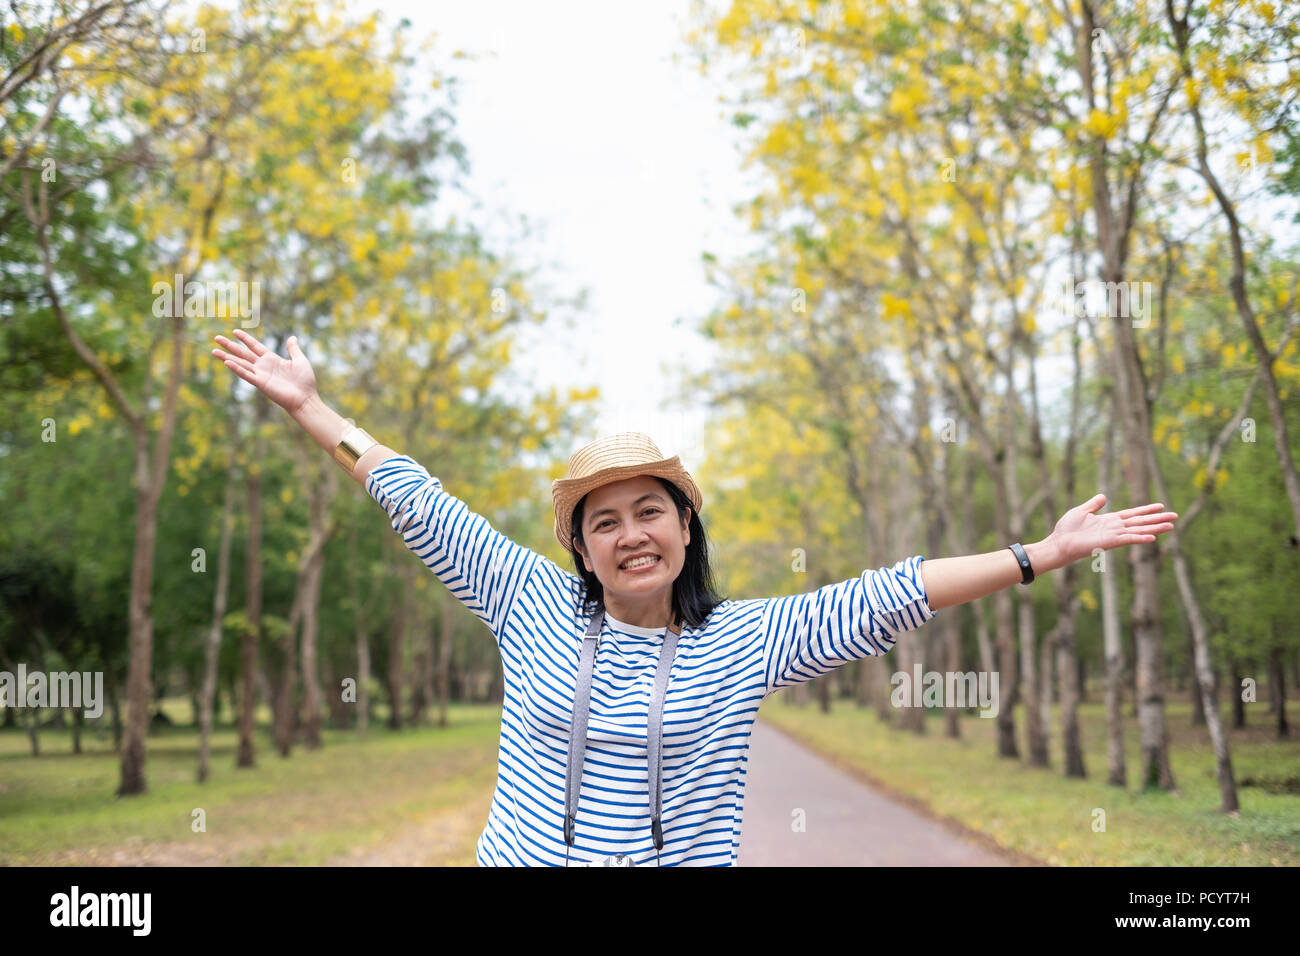 Asiatische reisende Frau backpacker Arm heben, Blick in die Kamera lächeln und mit Genießen Moment im Wald im Herbst, Freiheit Wanderlust Travel. solo Bac Stockfoto